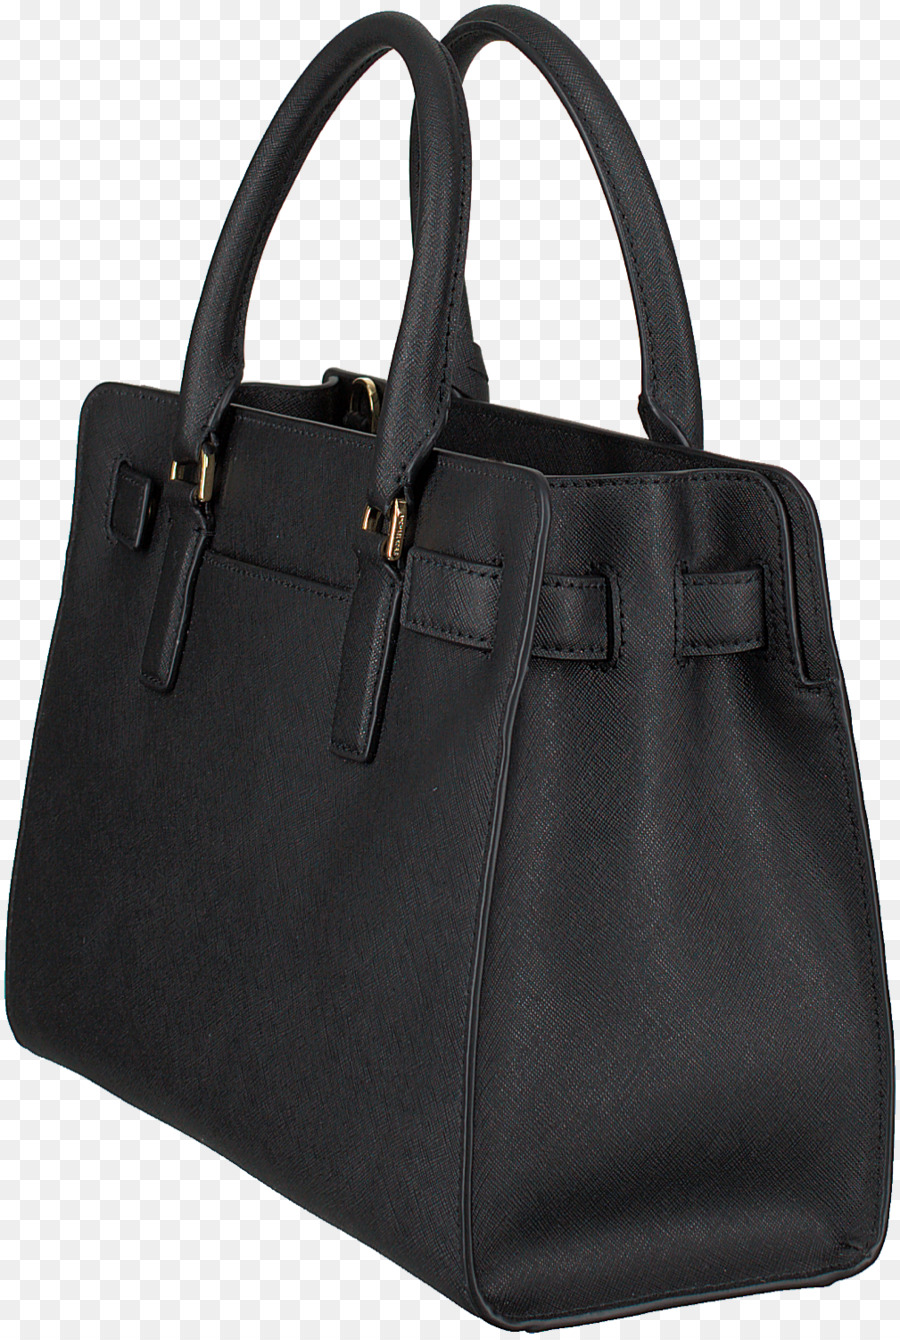 Handtasche Laptop-Kleidung-Accessoires-Leder - Frauen Tasche